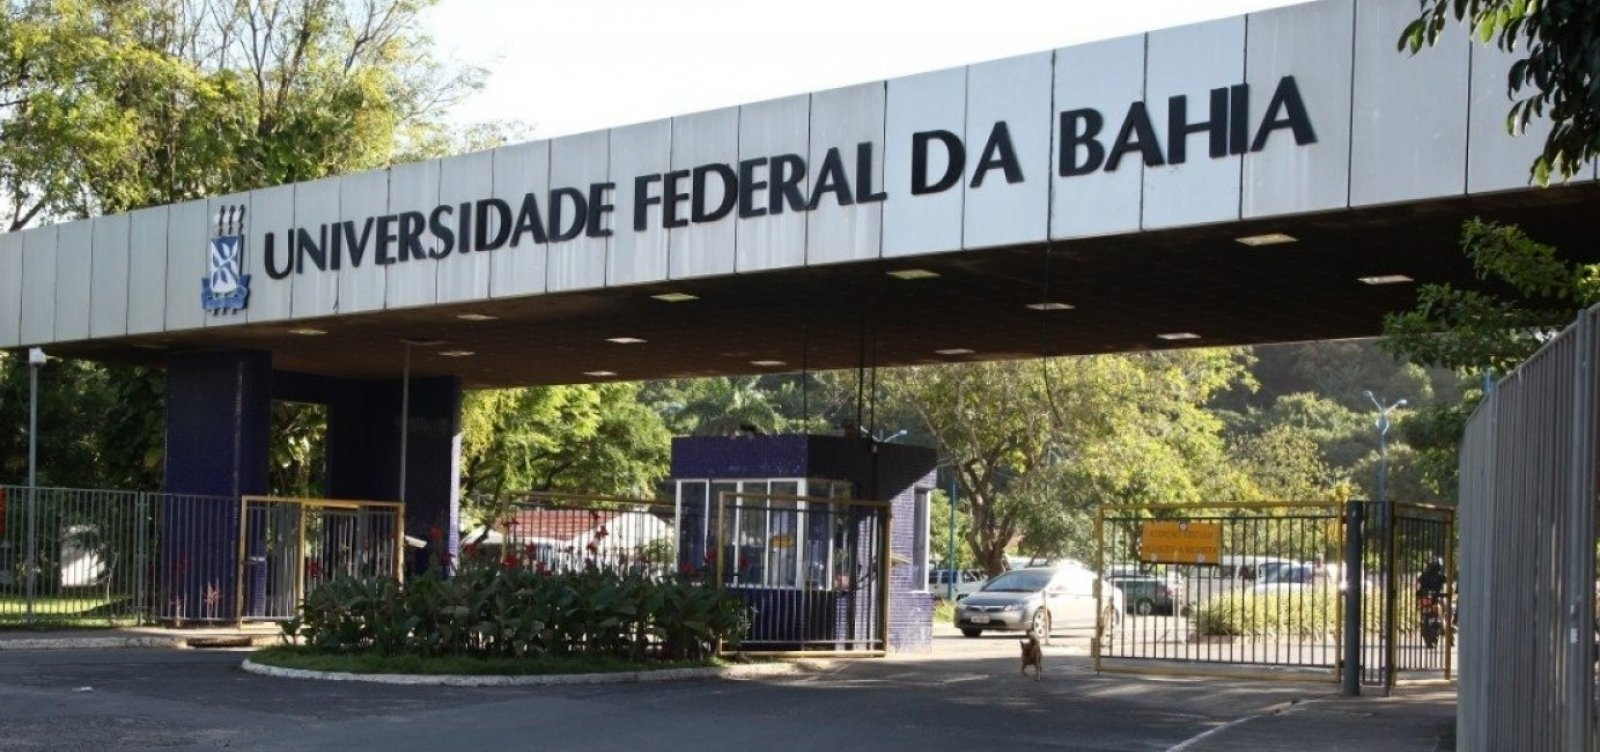 Universidades federais declaram apoio ao TSE e repudiam ataques contra sistema eleitoral brasileiro